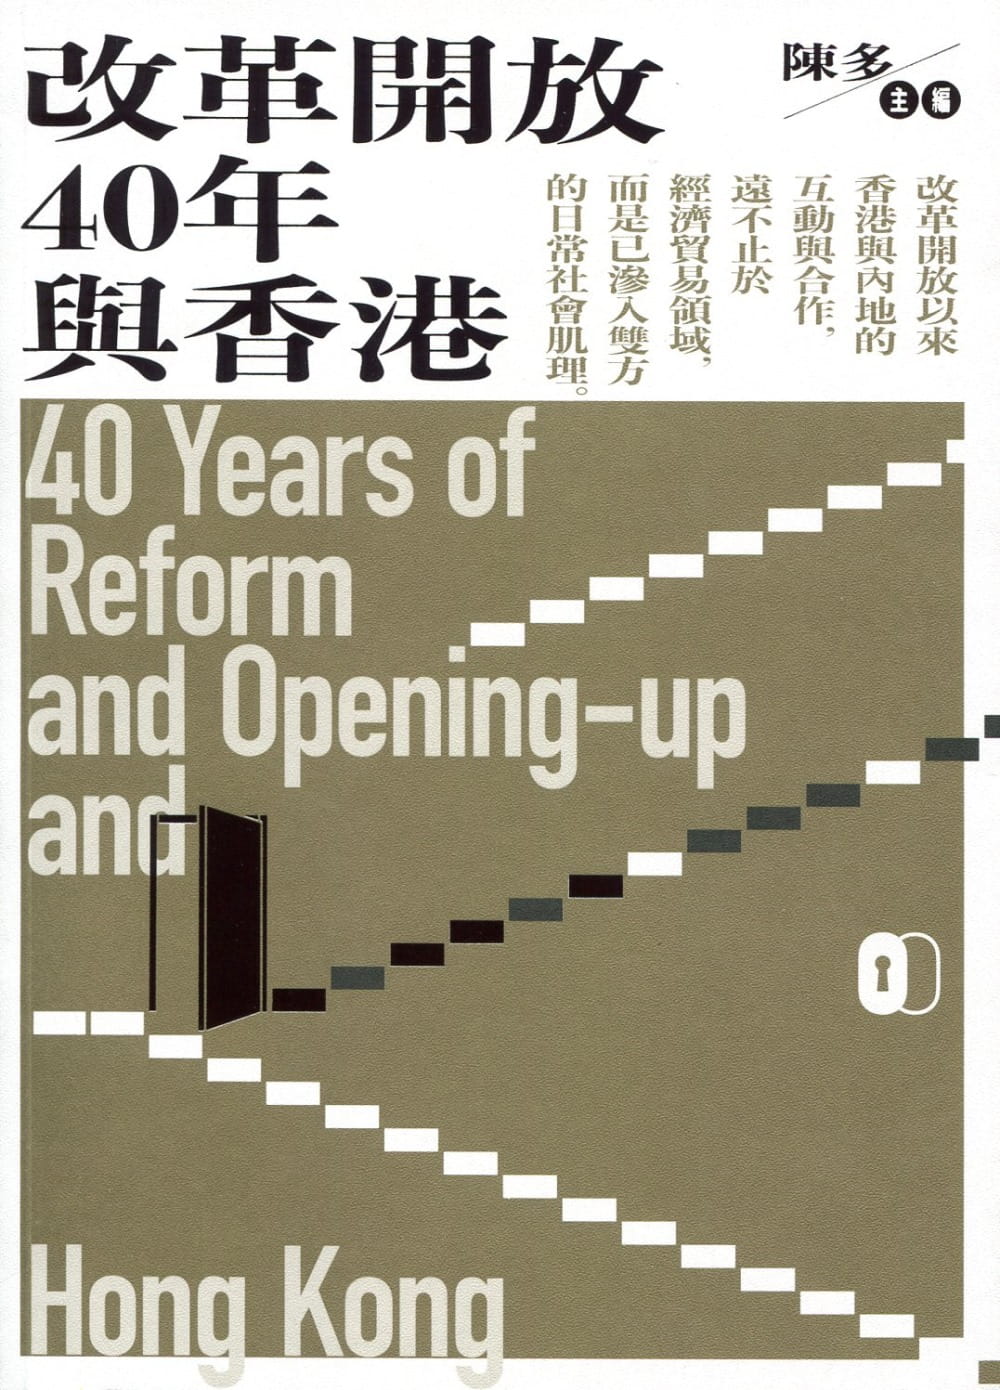 改革開放40年與香港